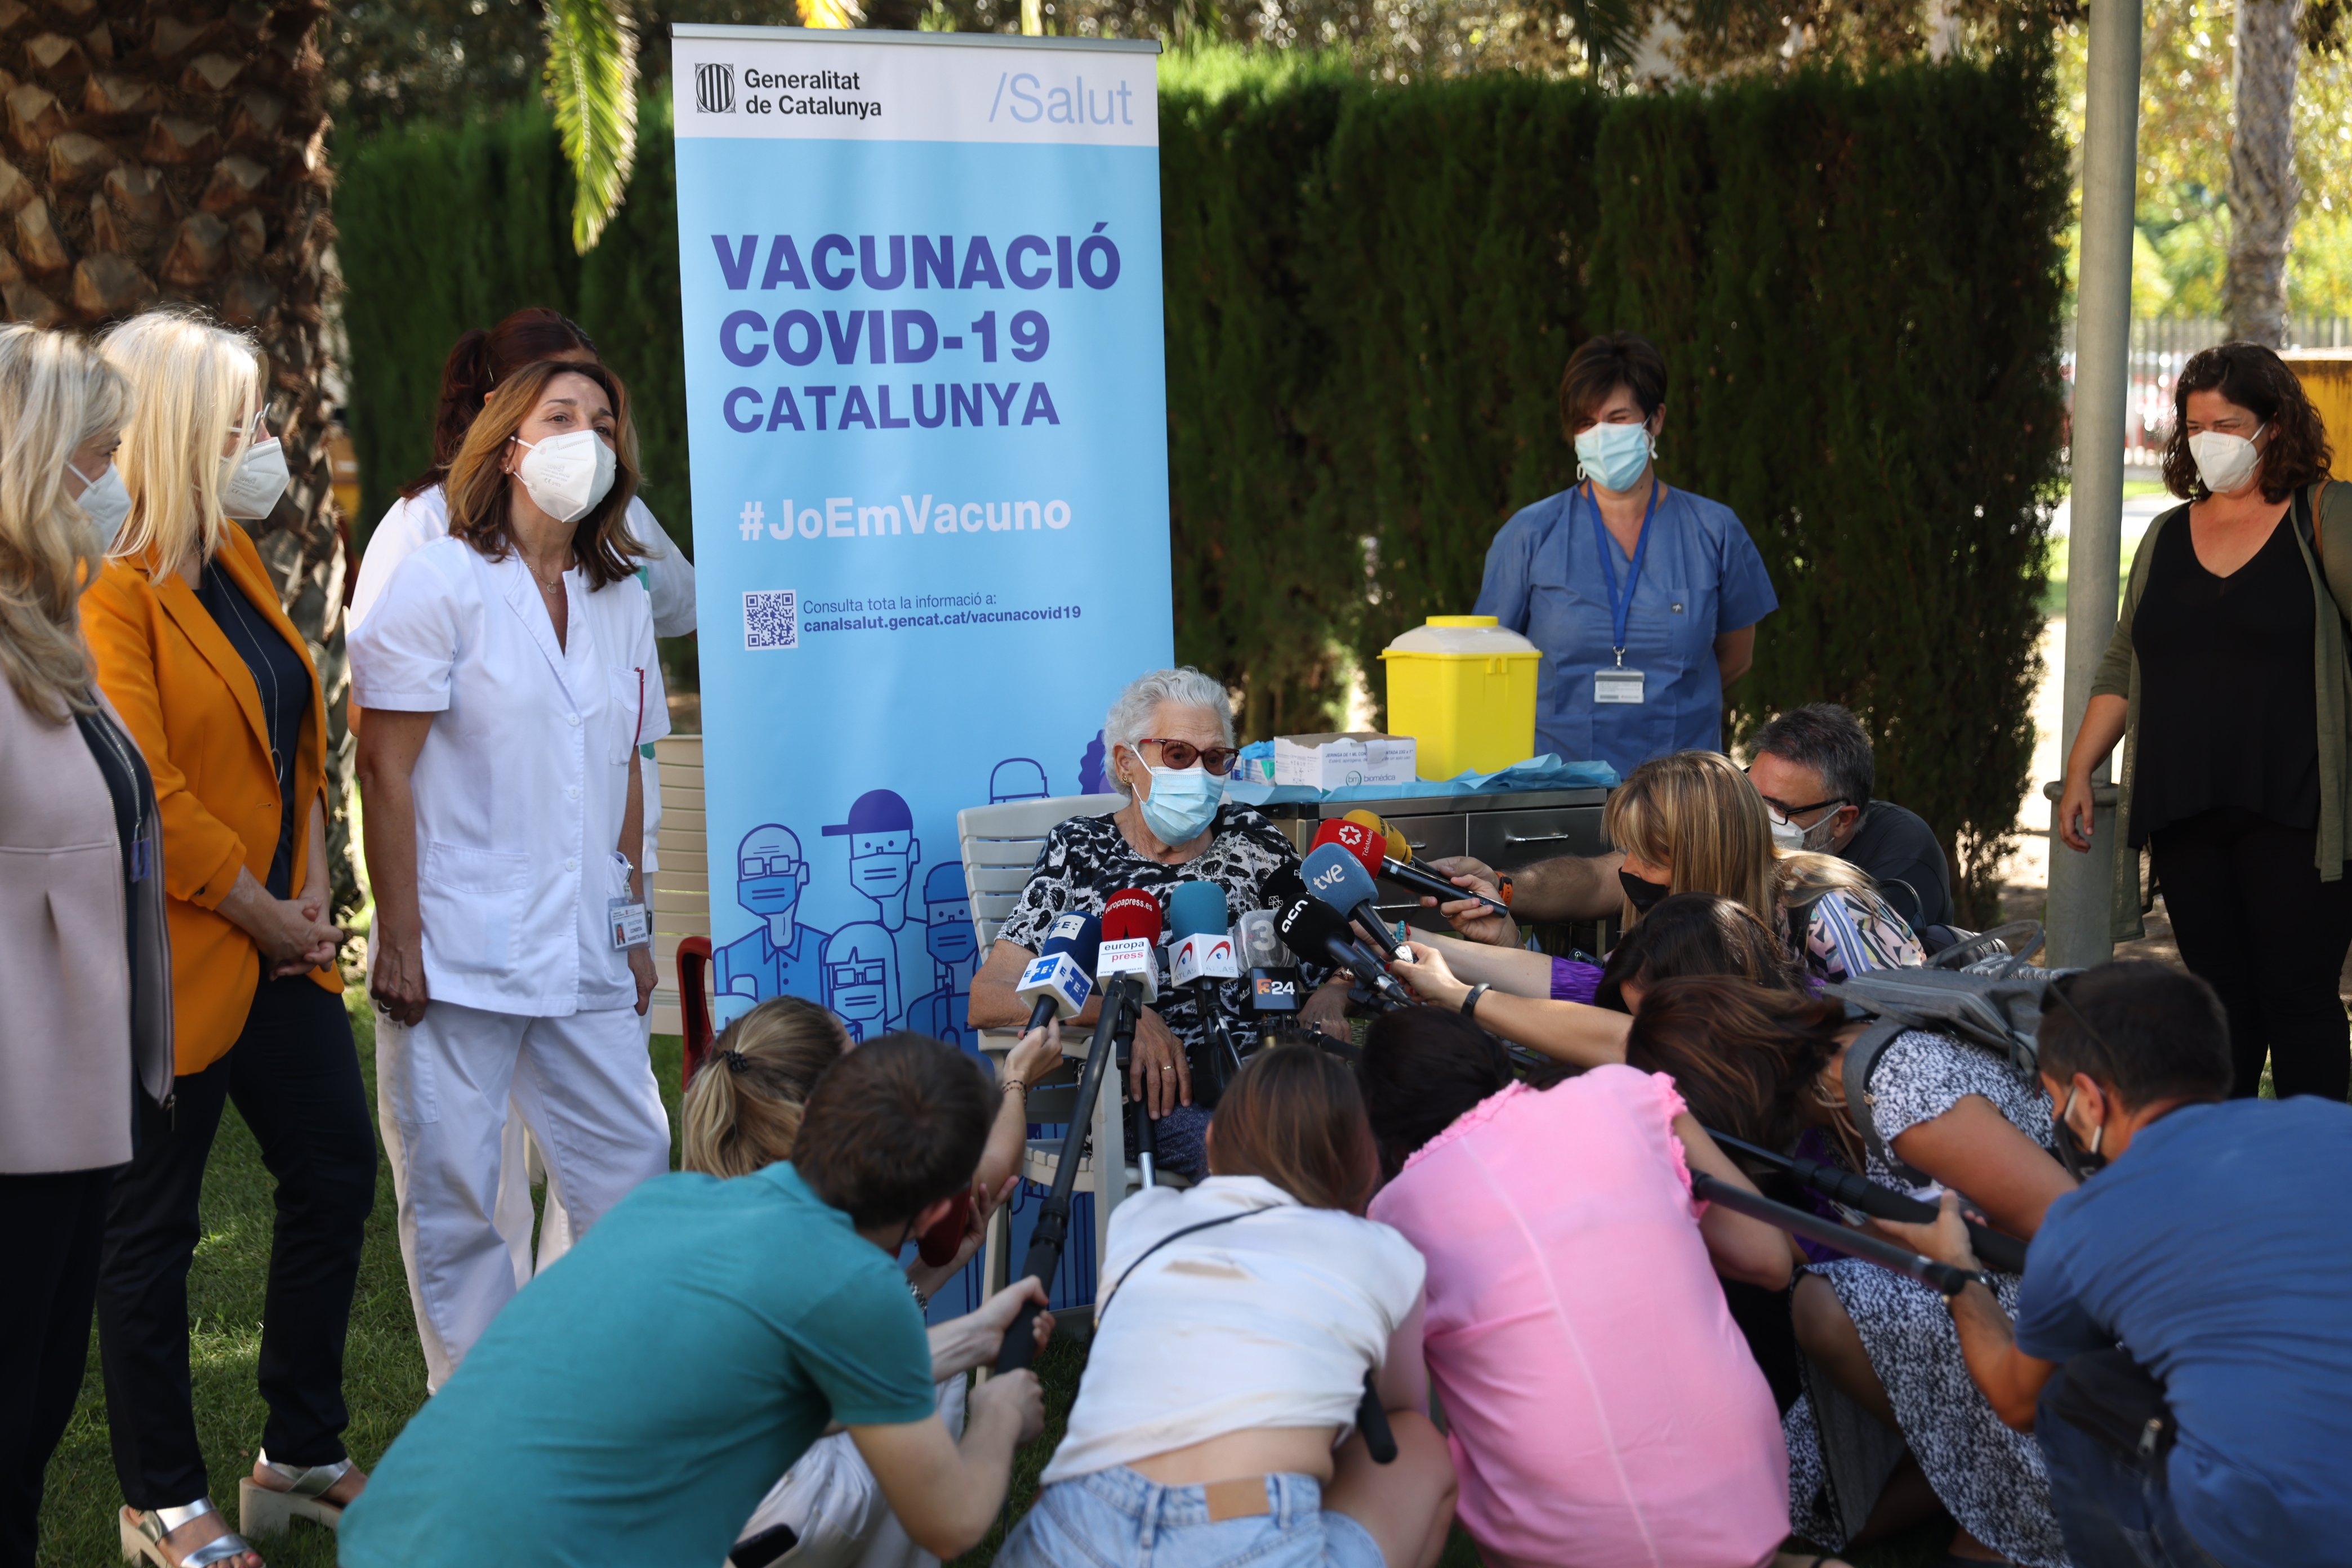 Inicio tercera dosis de vacunación covid, residencia Feixa Llarga del Hospitalet - Sergi Alcàzar